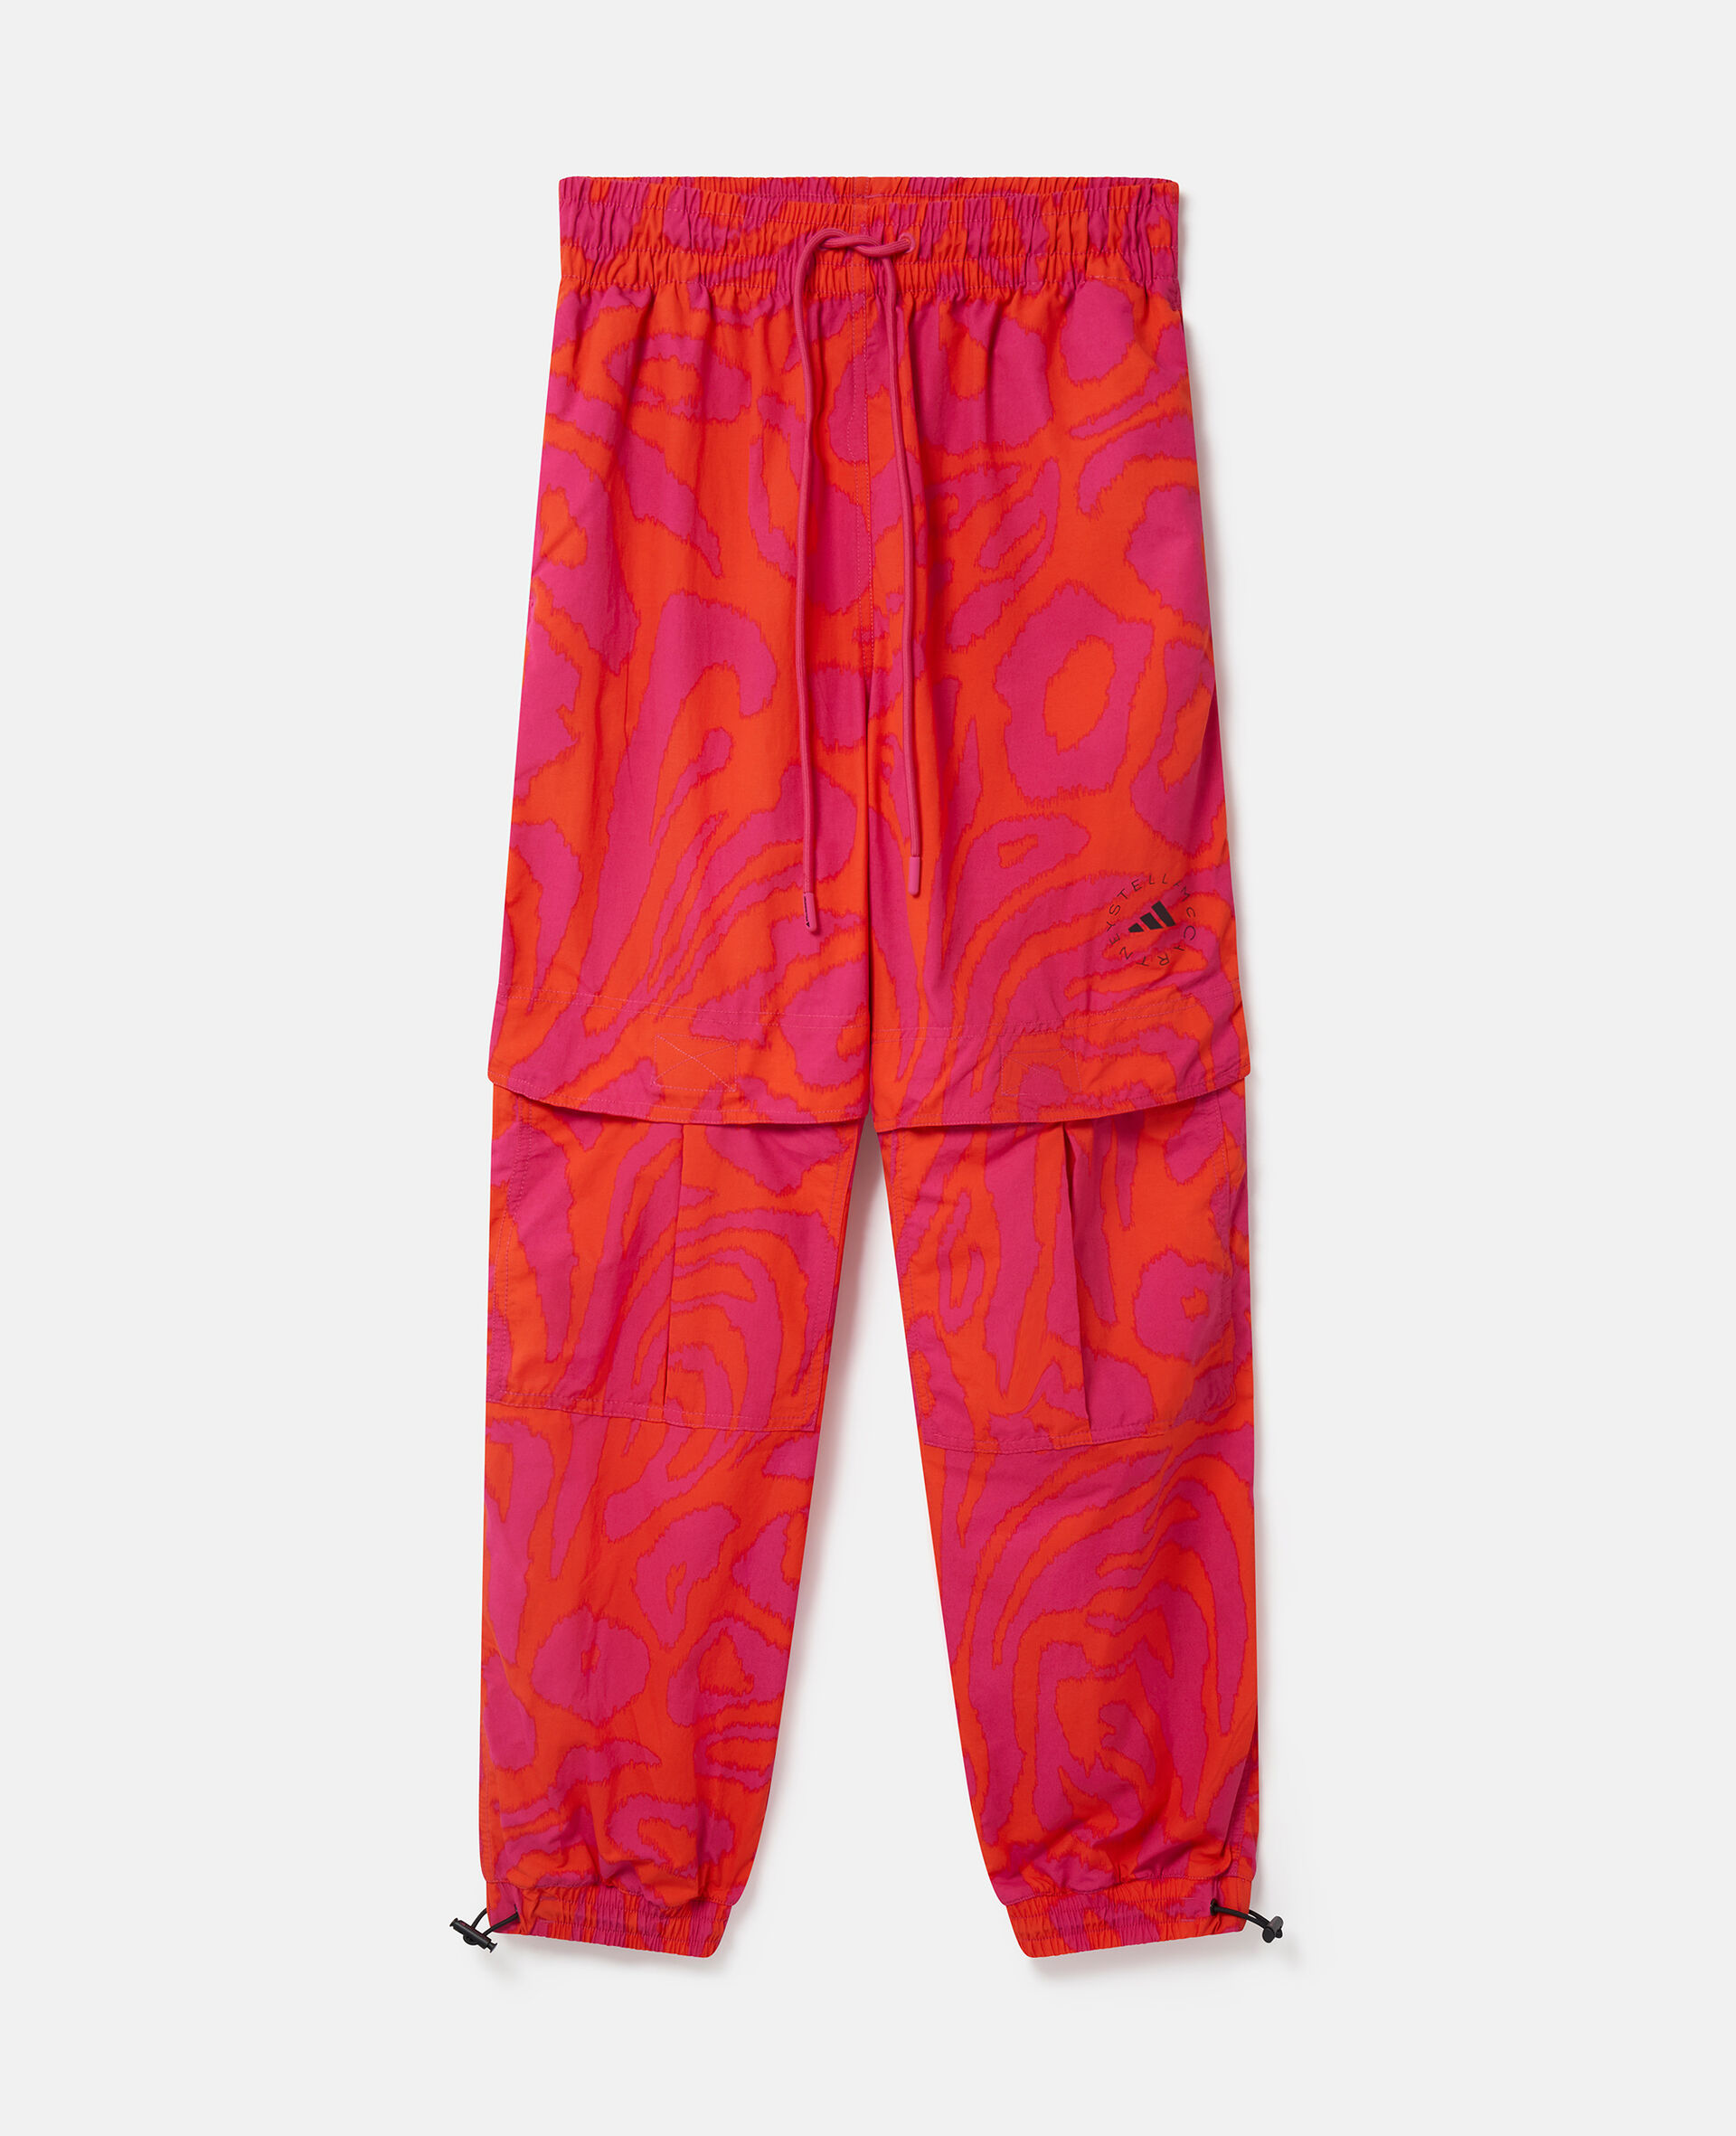 TrueCasuals豹纹梭织运动长裤-Multicolored-medium